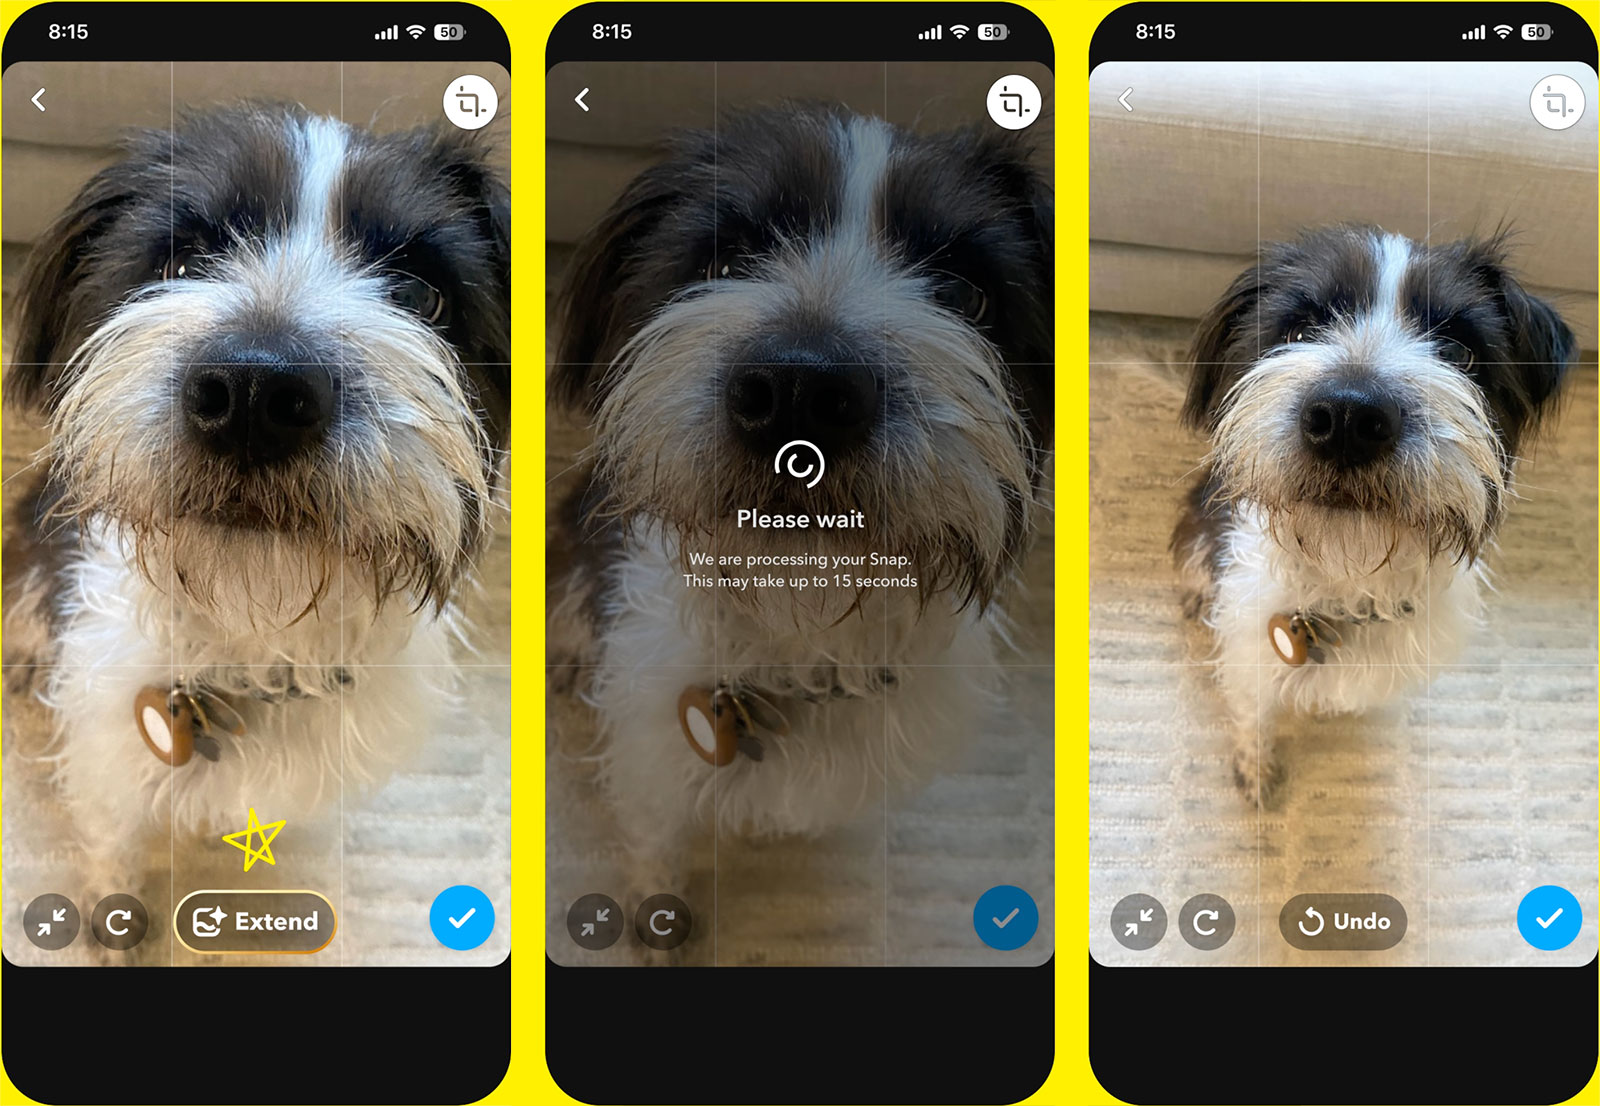 Les abonnés de Snapchat+ peuvent désormais utiliser l'IA pour créer ou développer des images dans l'application.